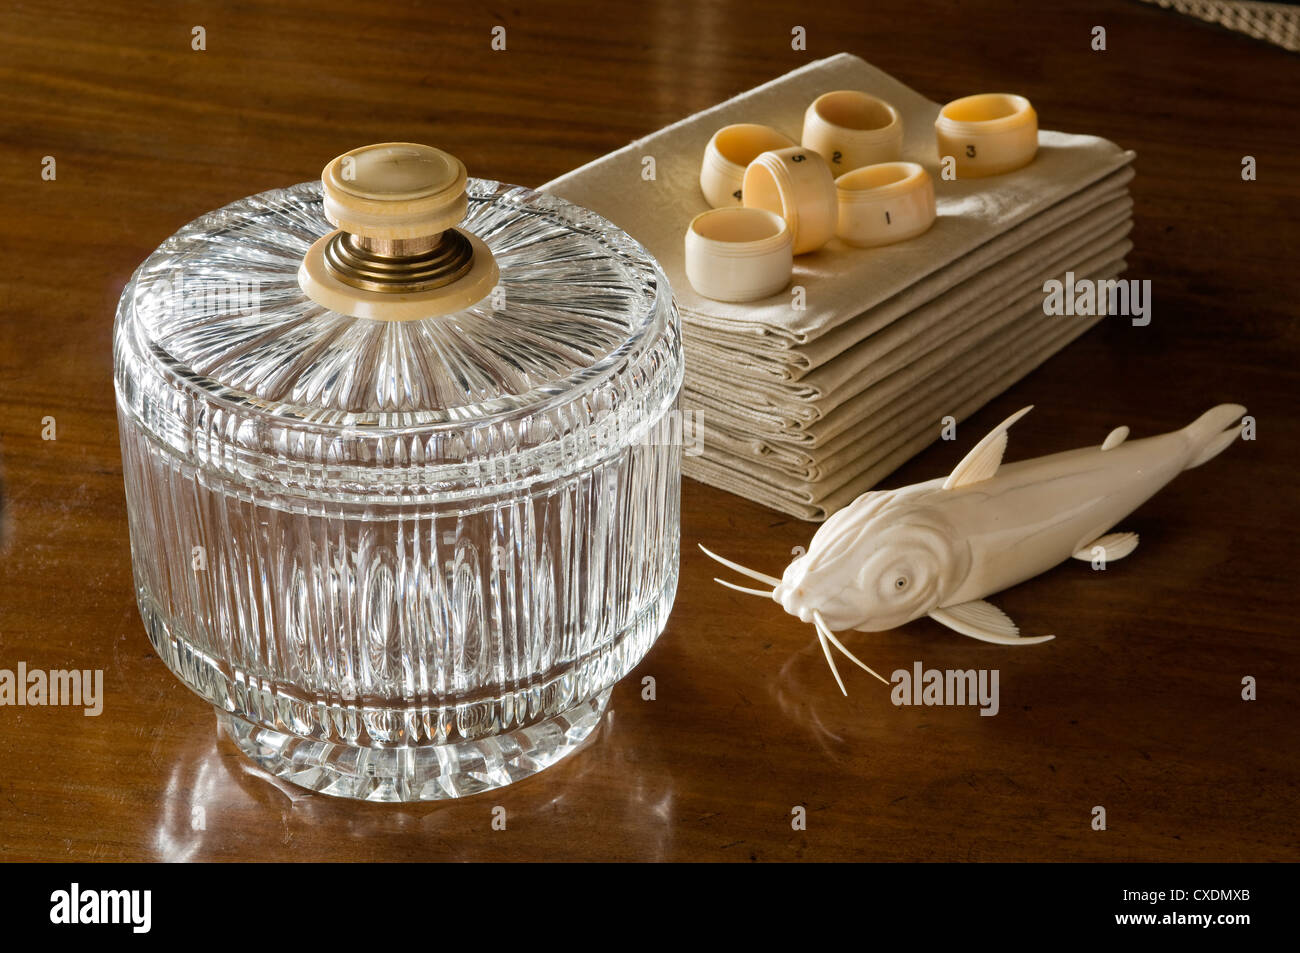 Kristall-Bowle mit Elfenbein und Silber Halterungen, geschnitzte Französisch Elfenbein Wels und Edwardian Serviettenringe Stockfoto